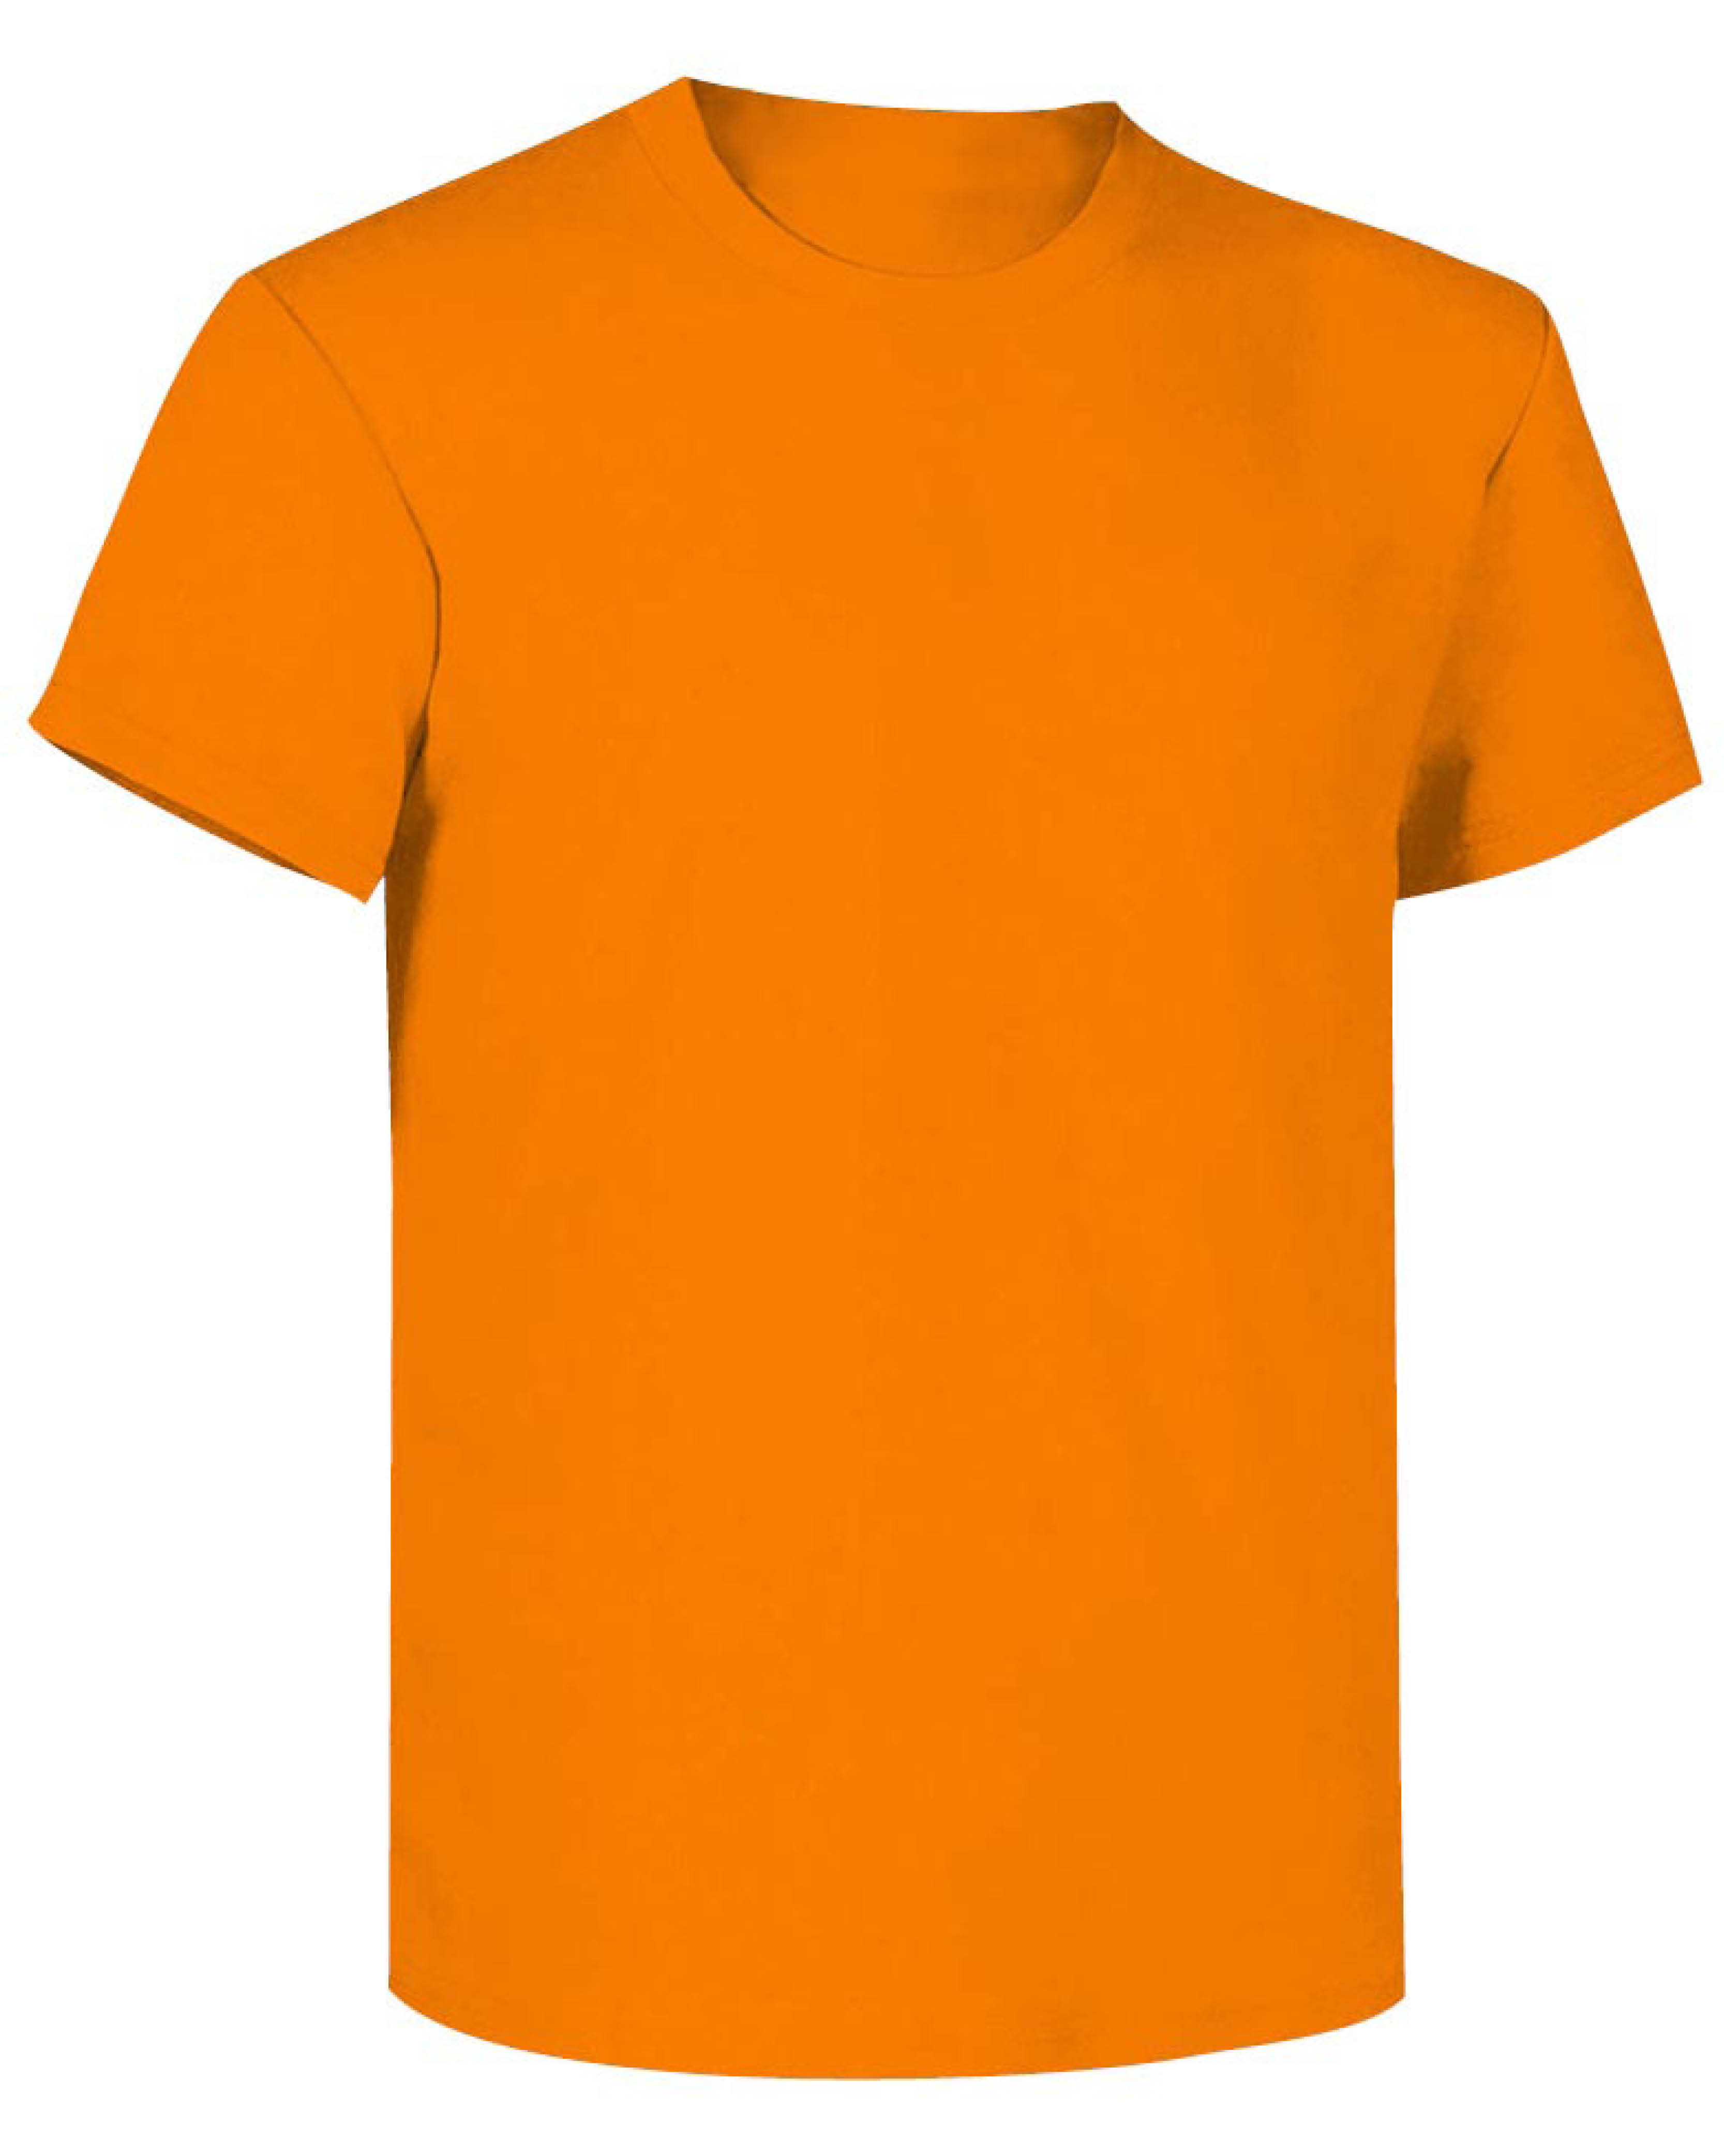 Modello di t-shirt arancione manica corta, che può essere realizzata con tessuto antivirale 